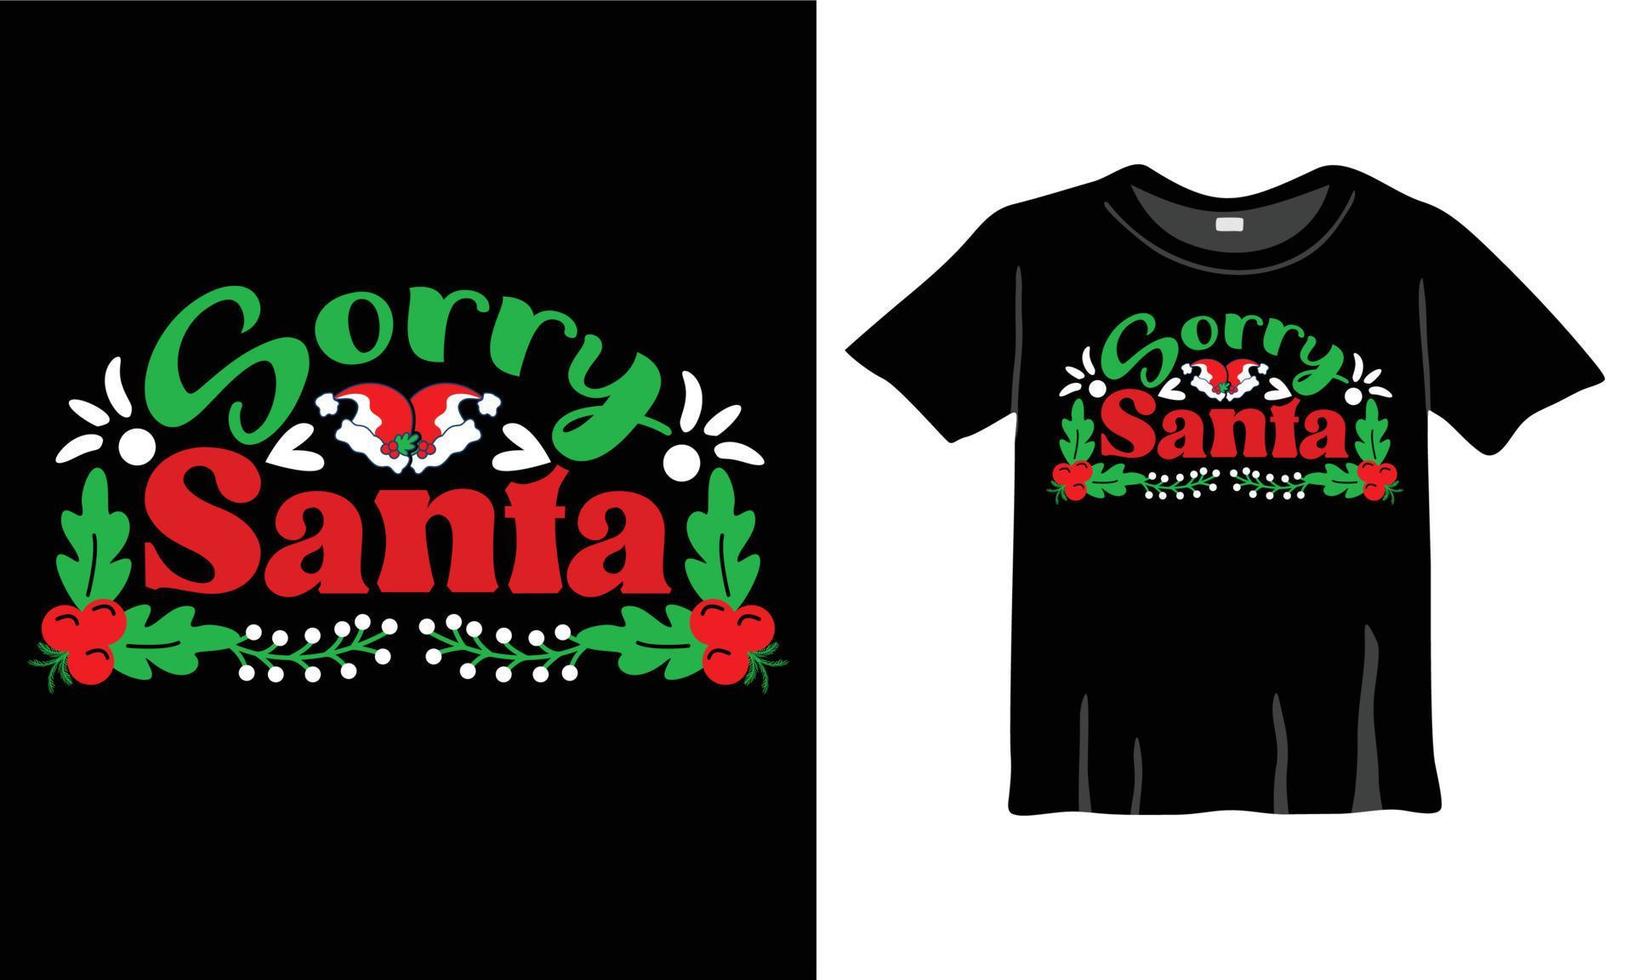 förlåt santa jul t-shirt. jul vykort, baner text. jul slogan för grafik på t-tröjor och påsar, affischer, och kort. jul fras. vektor Citat